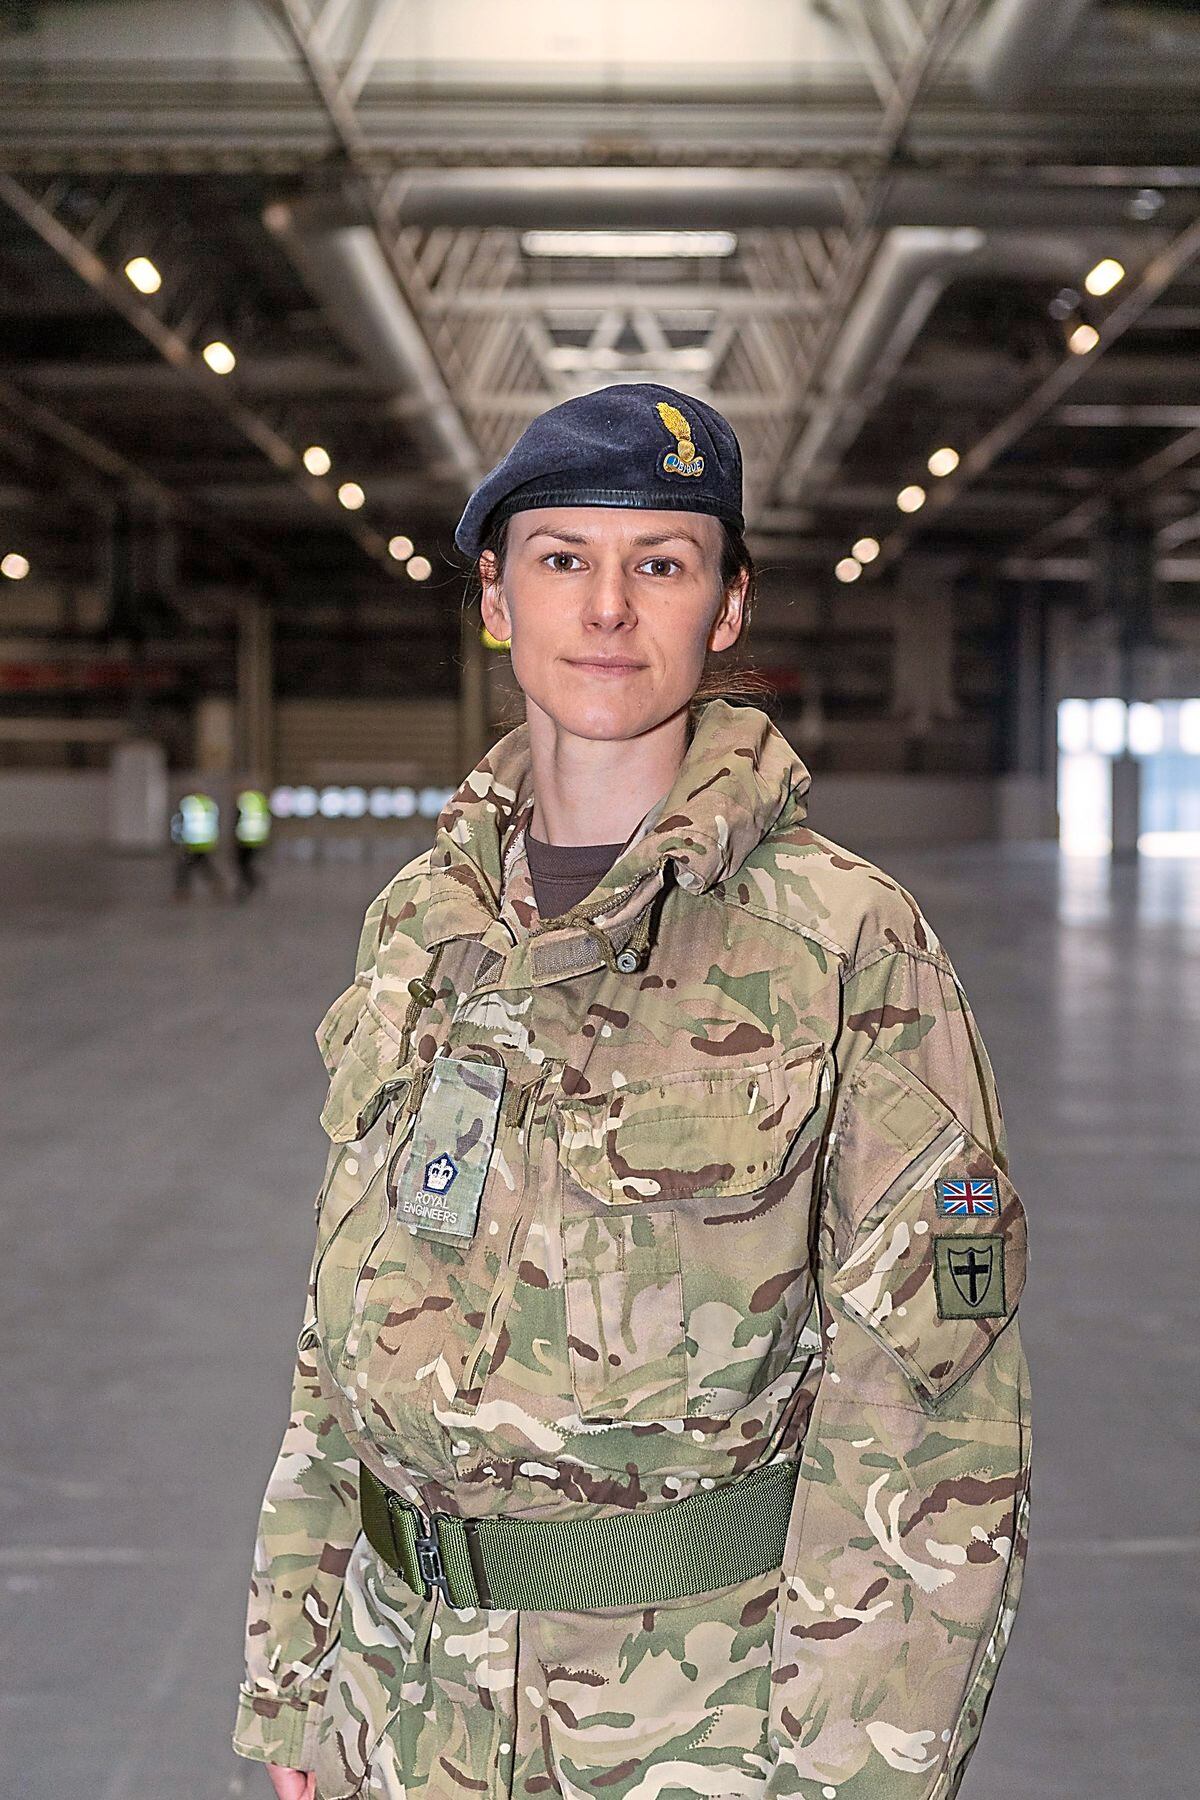 Royal Engineer Major Angela Laycock